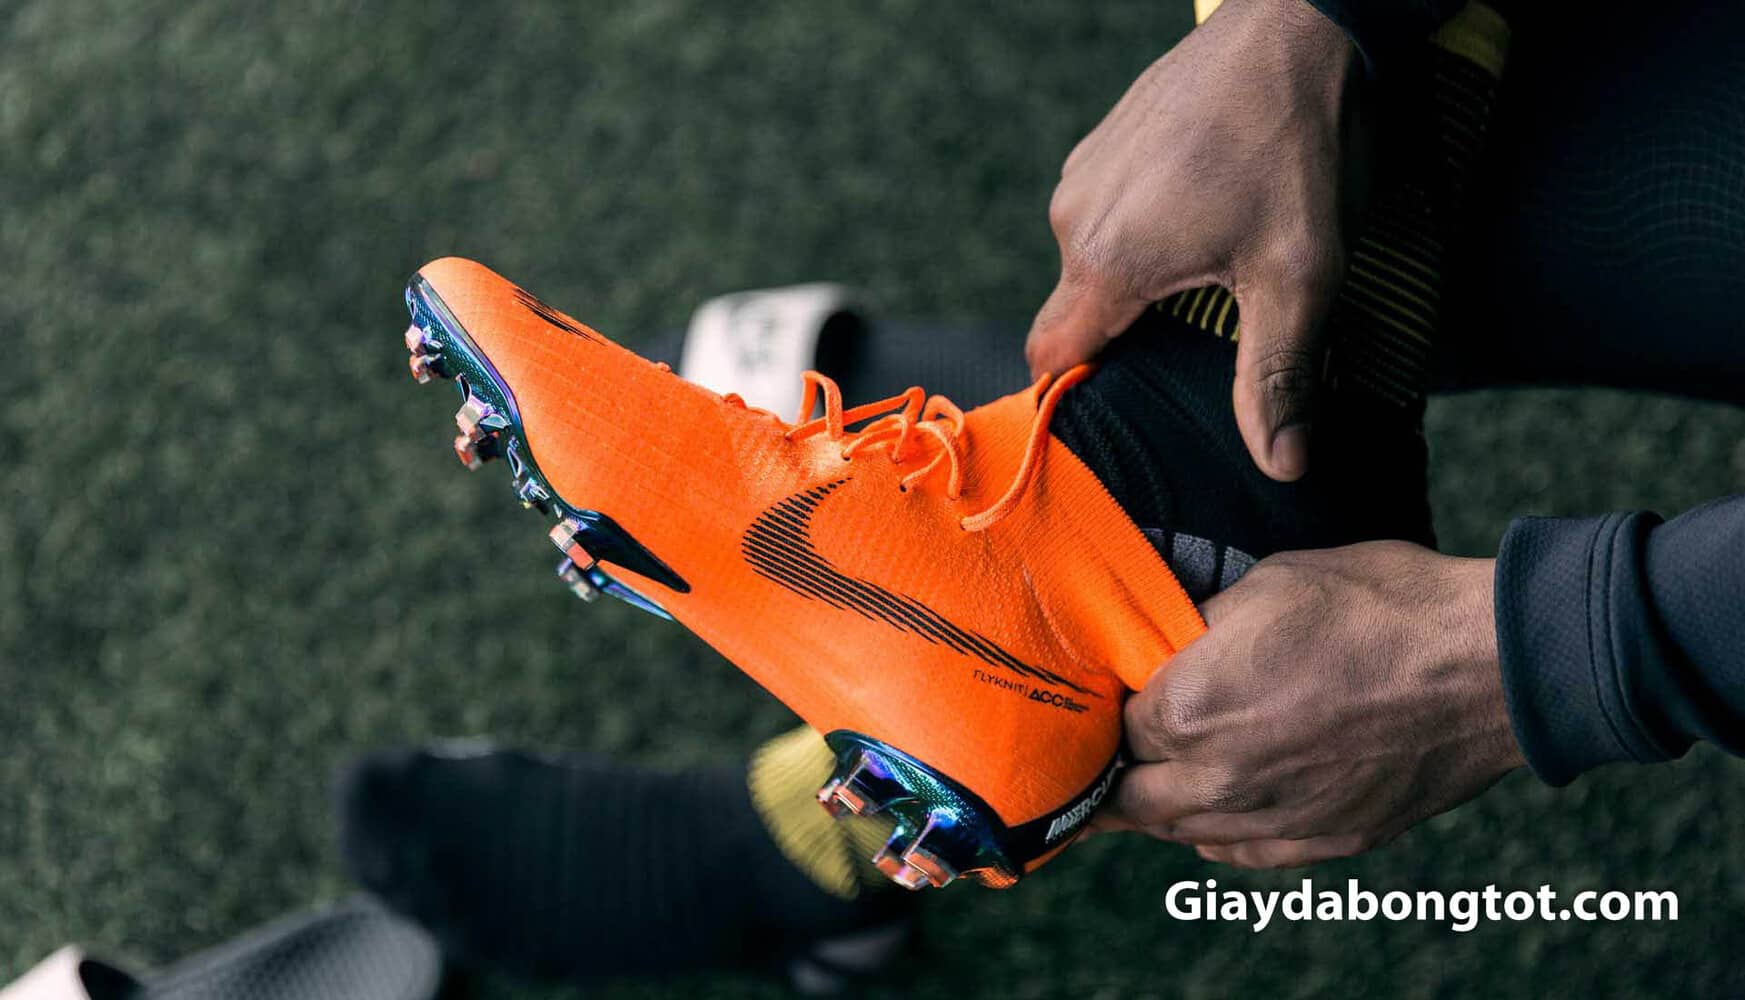 Đế giày đá bóng Nike Anatomical Soleplate giúp giảm trọng lượng và hỗ trợ tăng tốc